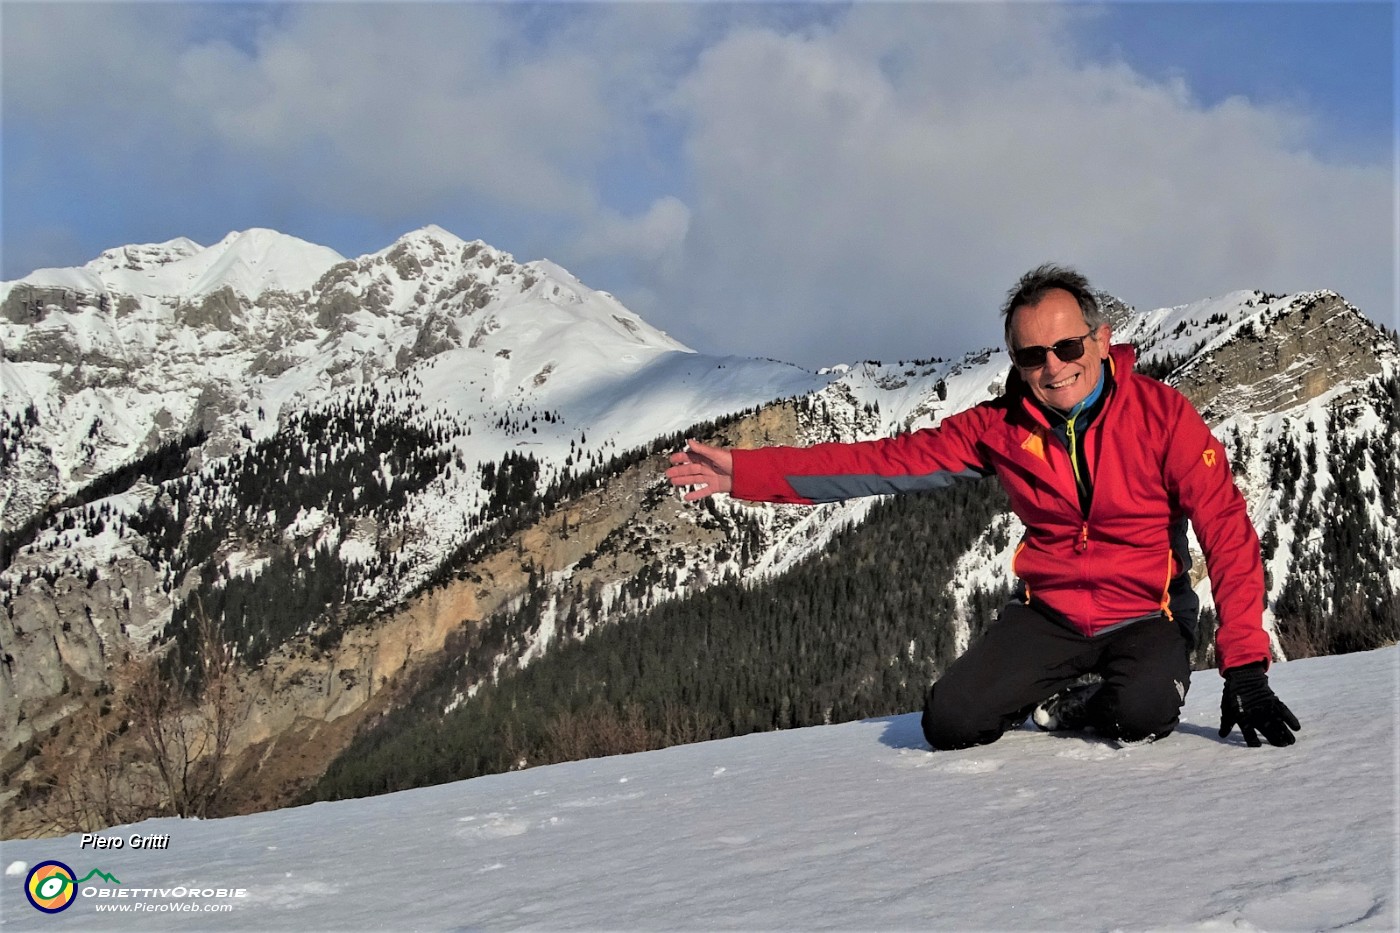 03 Sulle nevi di Torcola Vaga con vista verso Monti Secco e Pegherolo a sx e Pizzo Badile alle  spalle.JPG